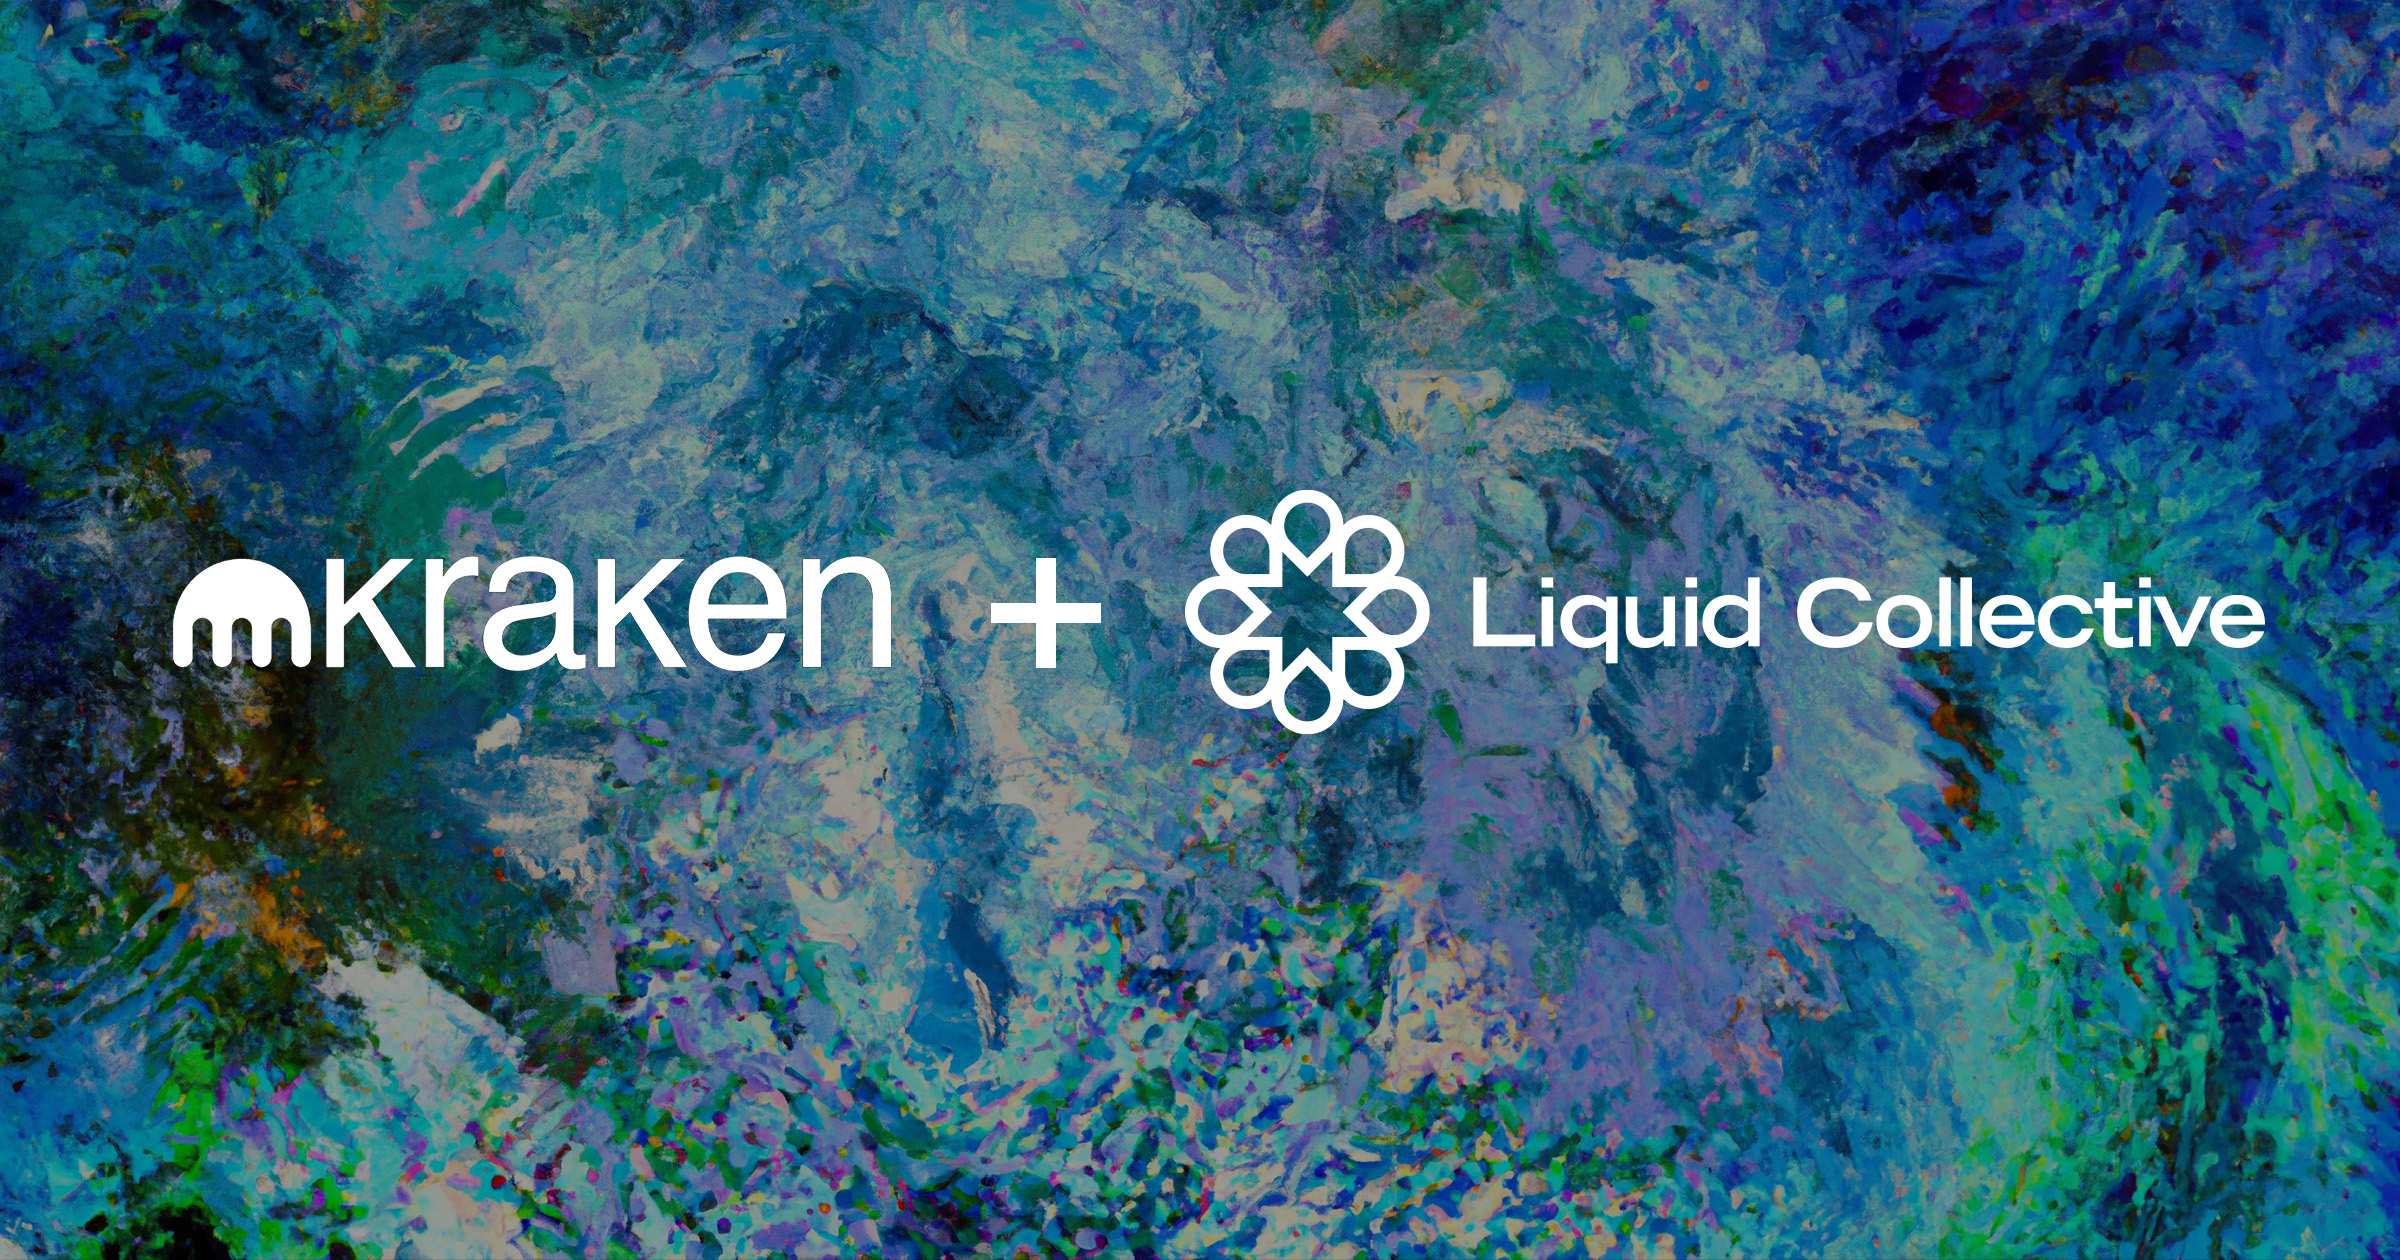 kraken liquid staking Liquid Collective consortium